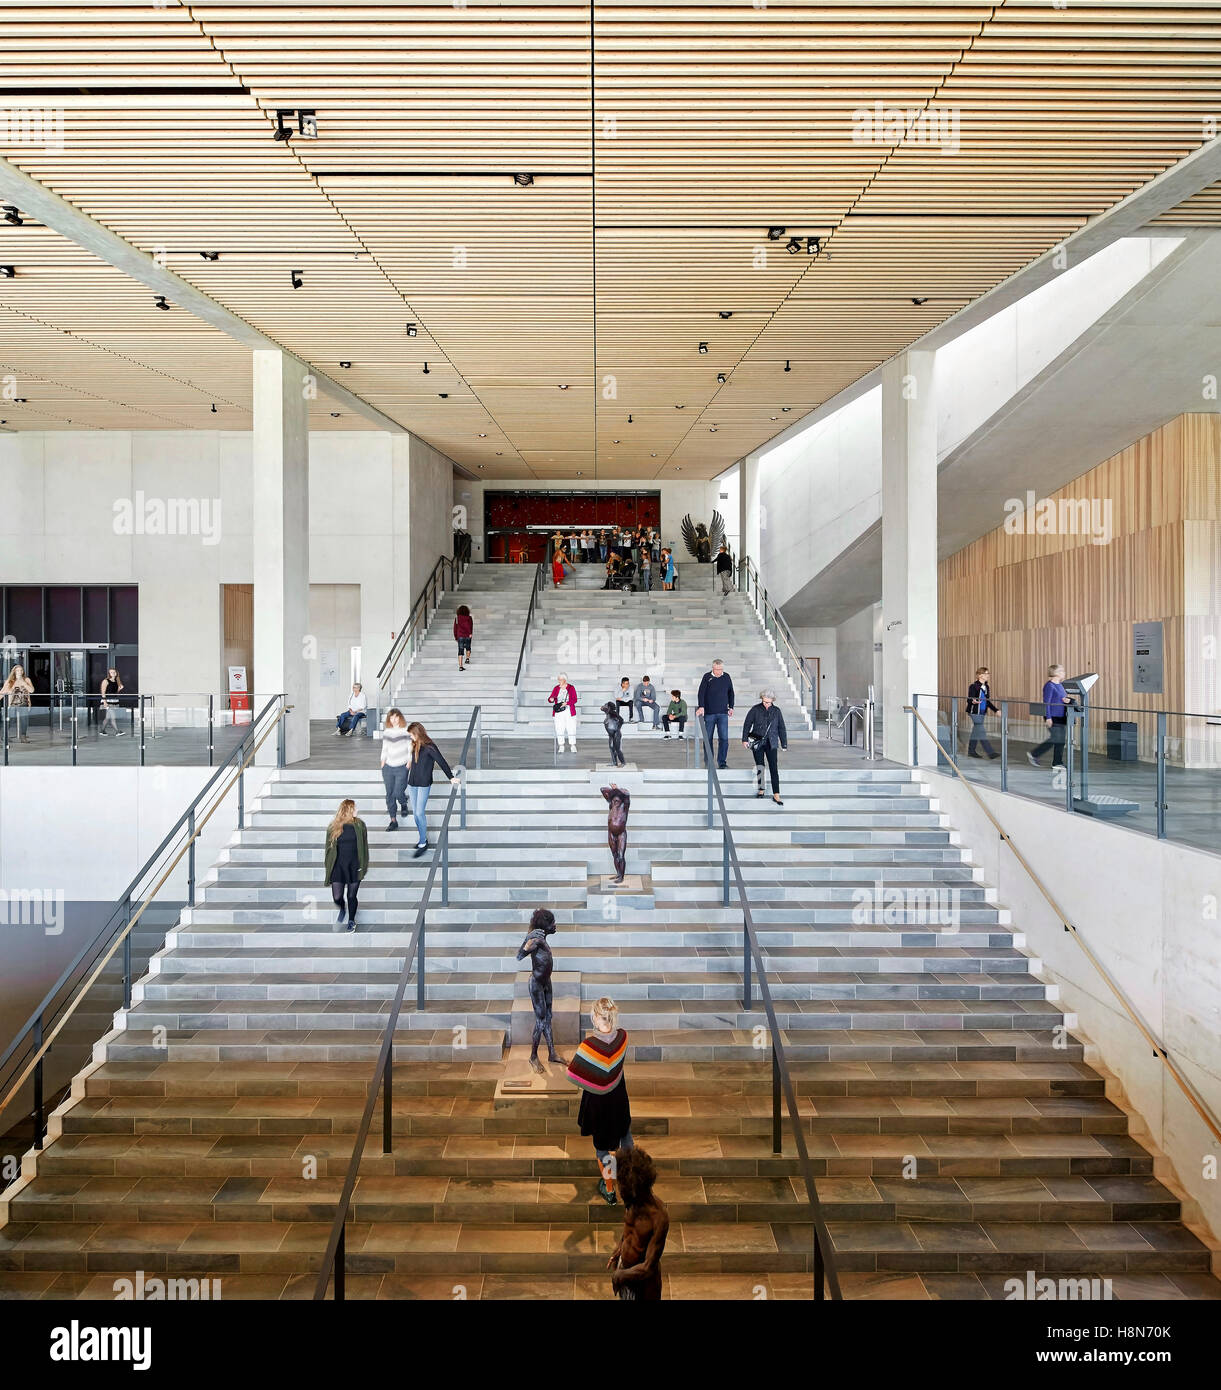 Foyer mit Mehrzweckhalle und breite Treppe. Moesgaard Museum, Aarhus, Dänemark. Architekt: Henning Larsen, 2015. Stockfoto